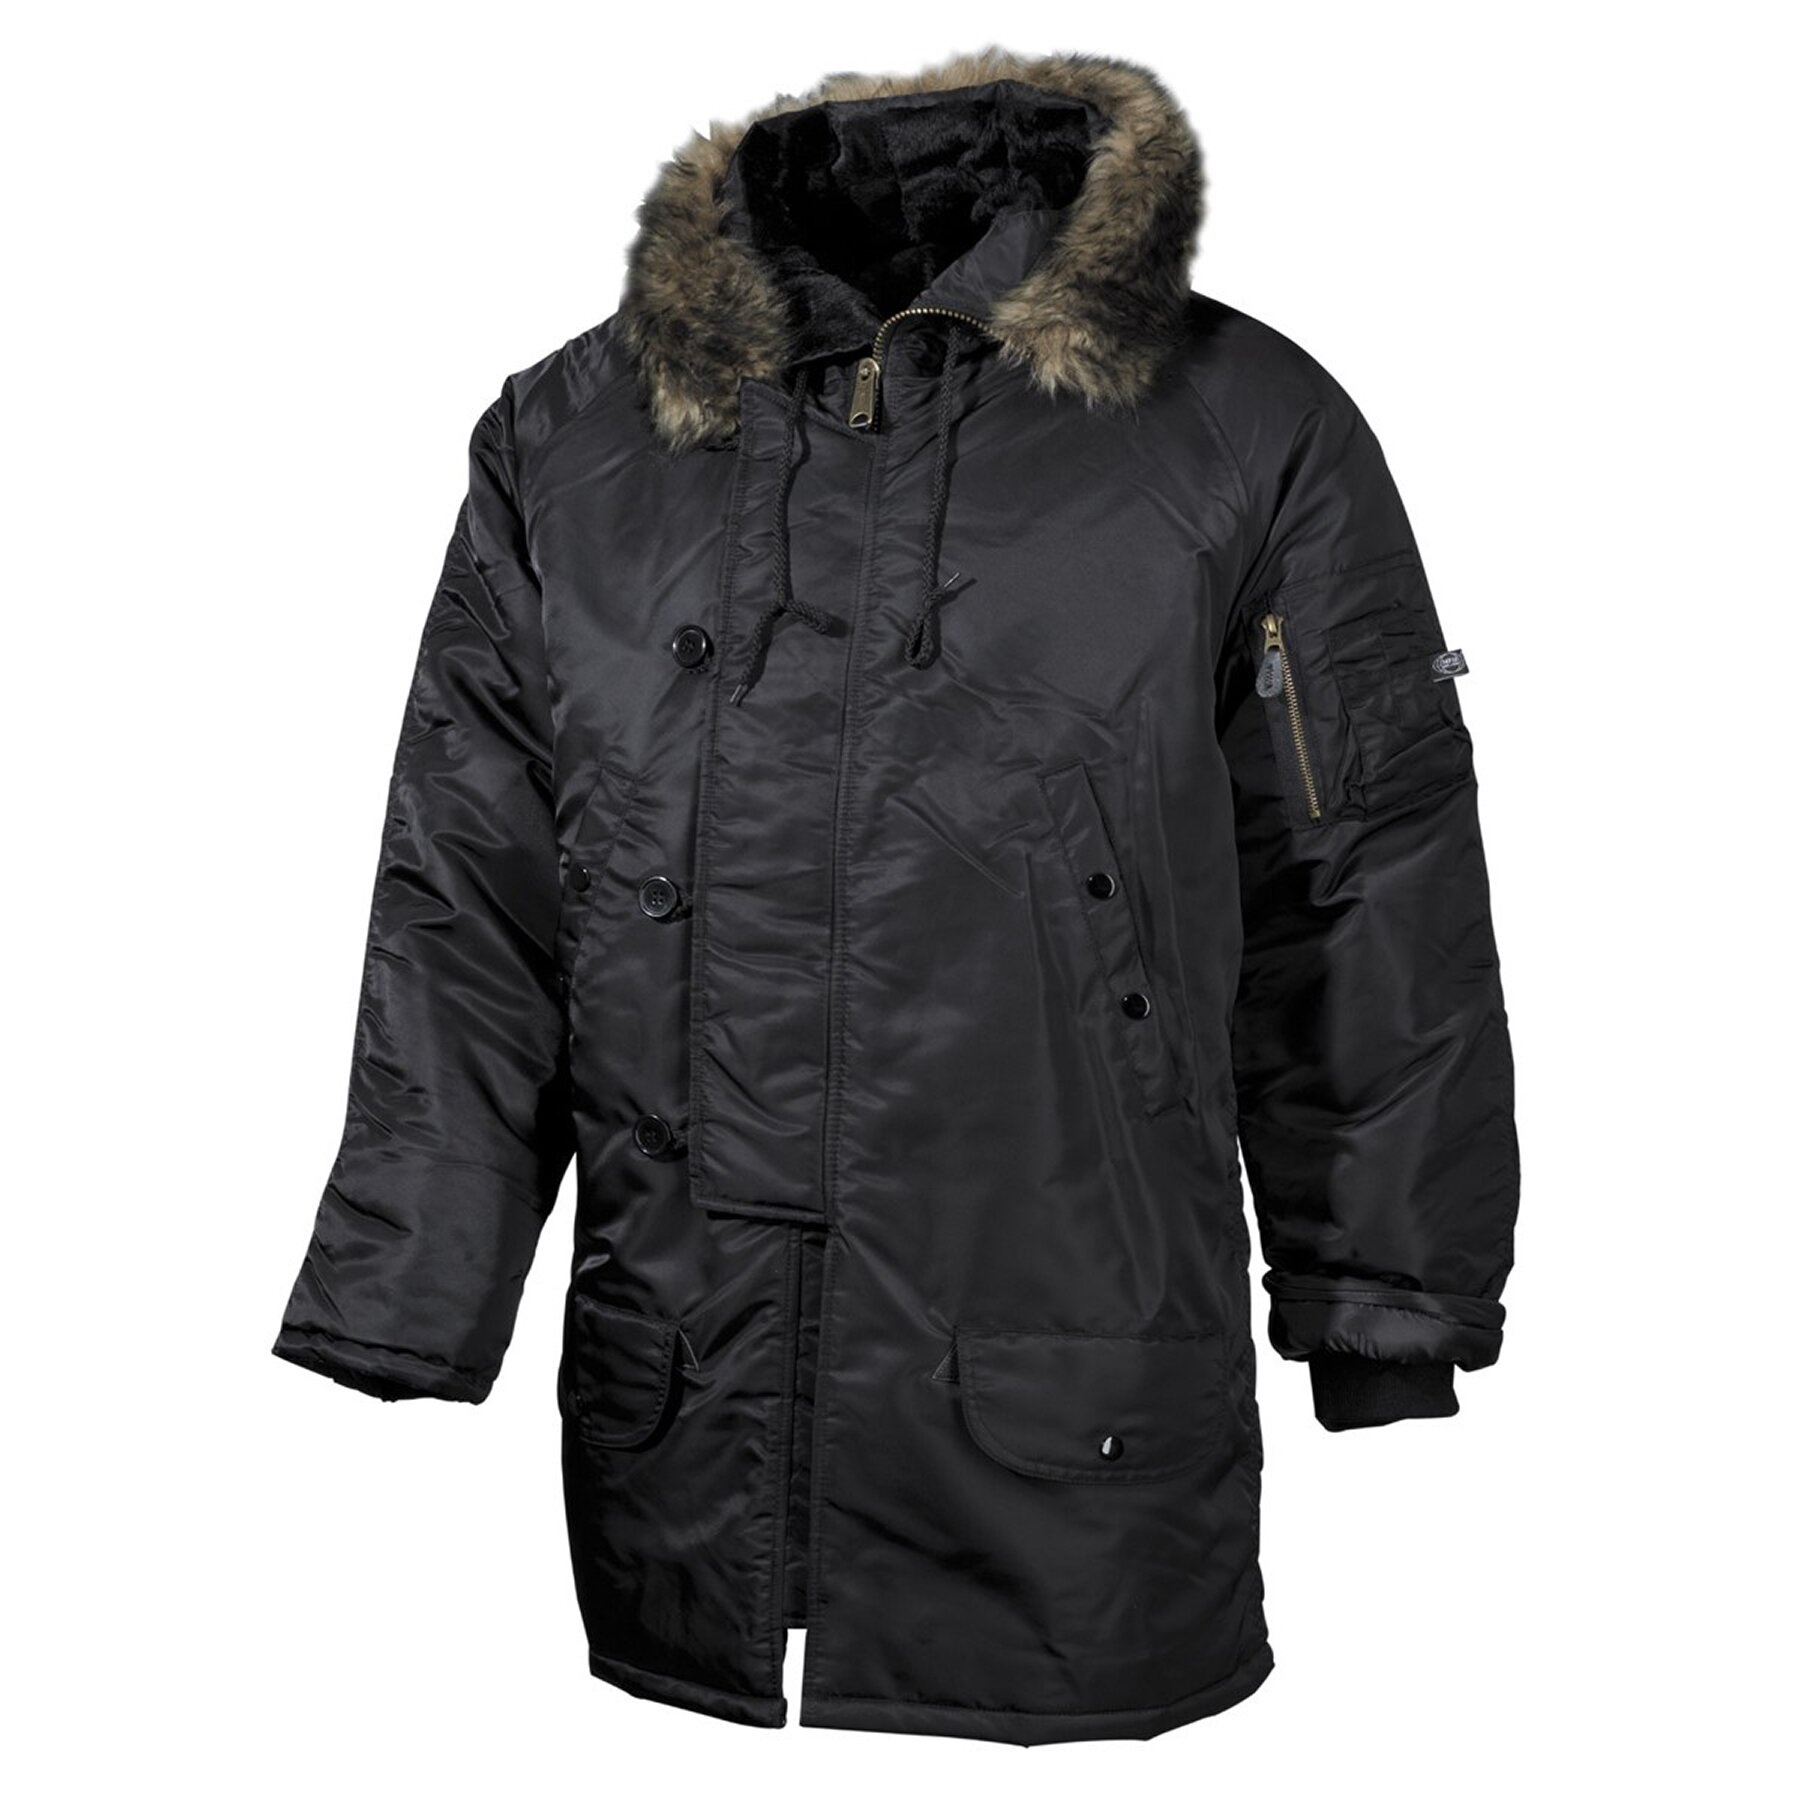 Купить куртку зимнюю омске. Куртка Аляска n-3b. Куртка Аляска японская чори 80. Куртка Альфа Индастрис Полар Джекет. Куртка Аляска удлиненная (черная, 48-50/170-176).